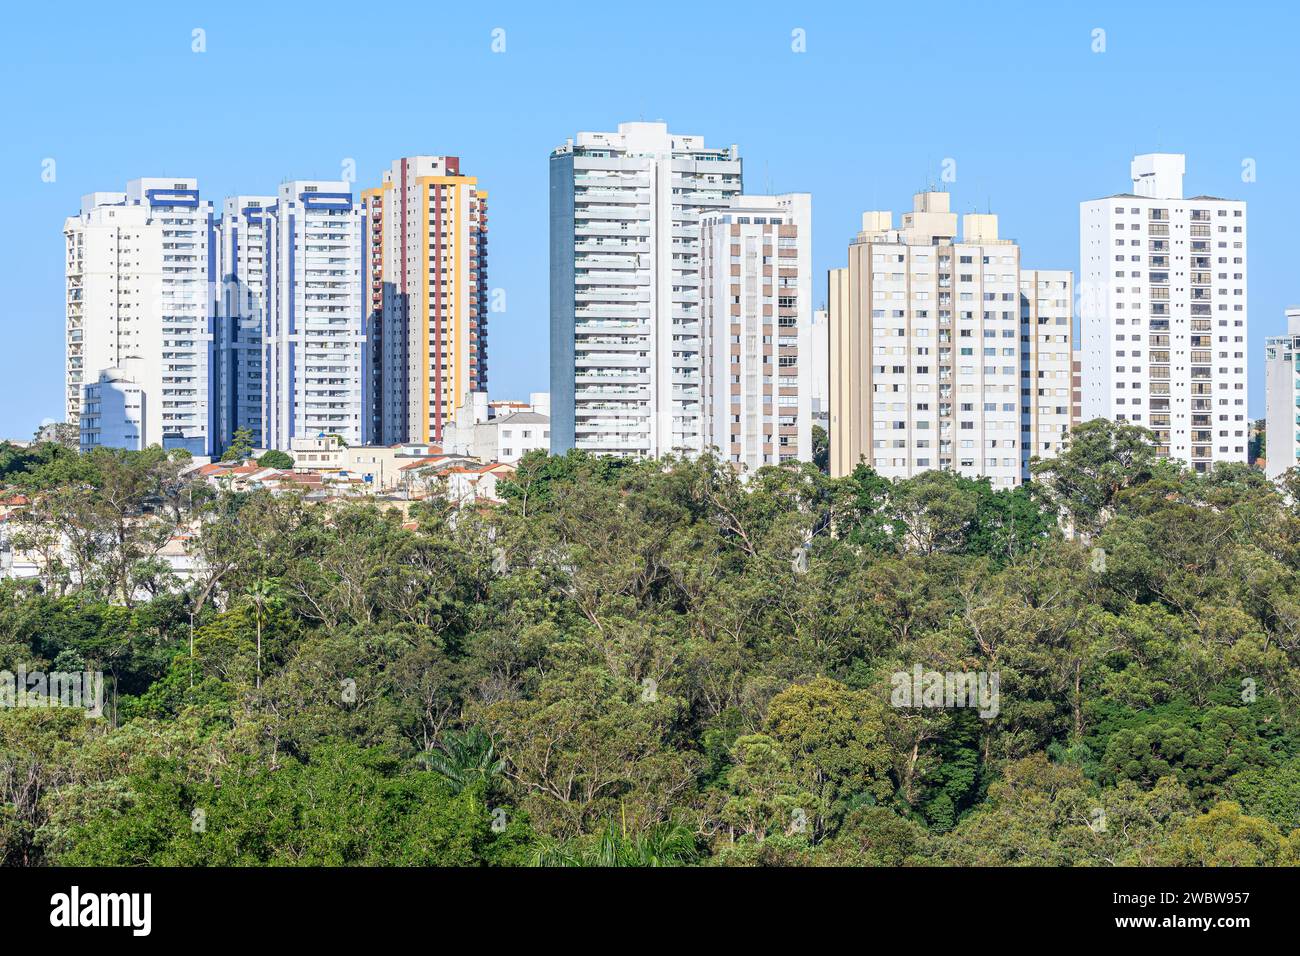 Grands bâtiments derrière un vaste espace vert d'arbres. Concept de ville verte. Photo prise à Sao Paulo - SP, Brésil. Banque D'Images